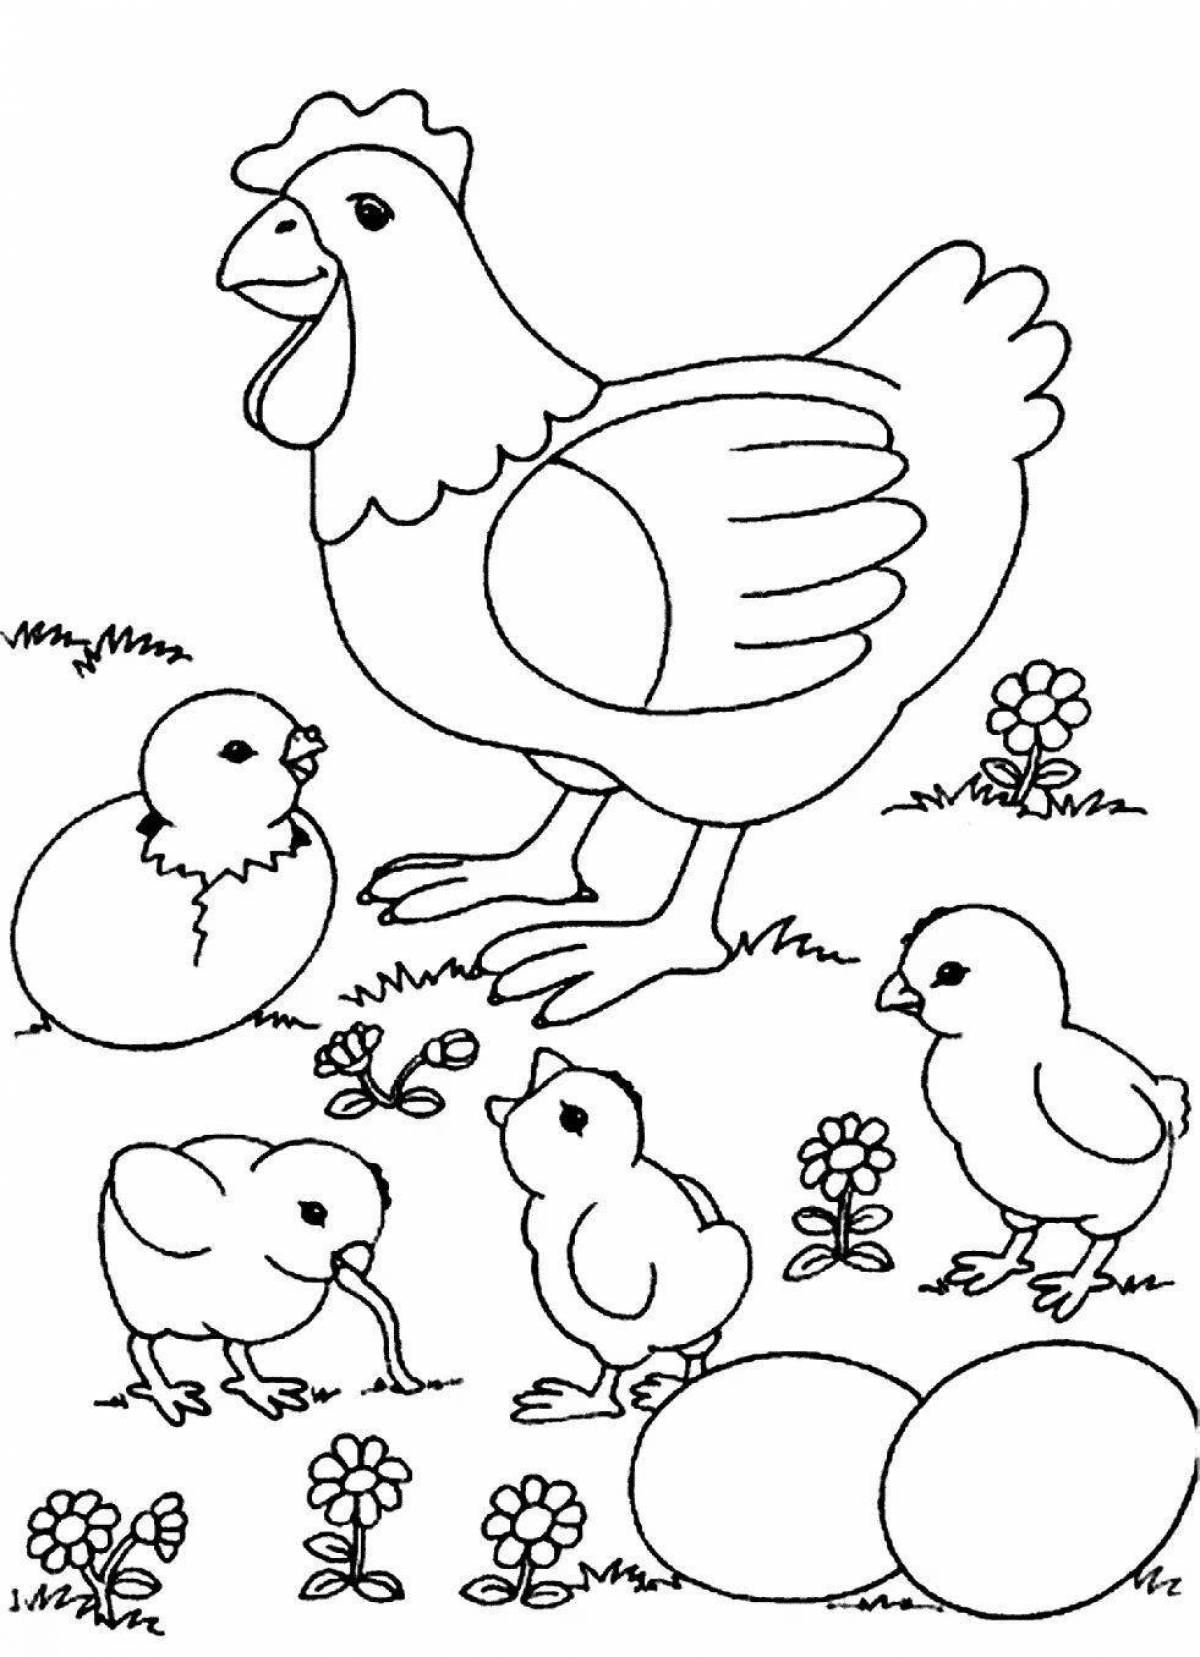 Раскраска экзотические цыплята для детей 6-7 лет